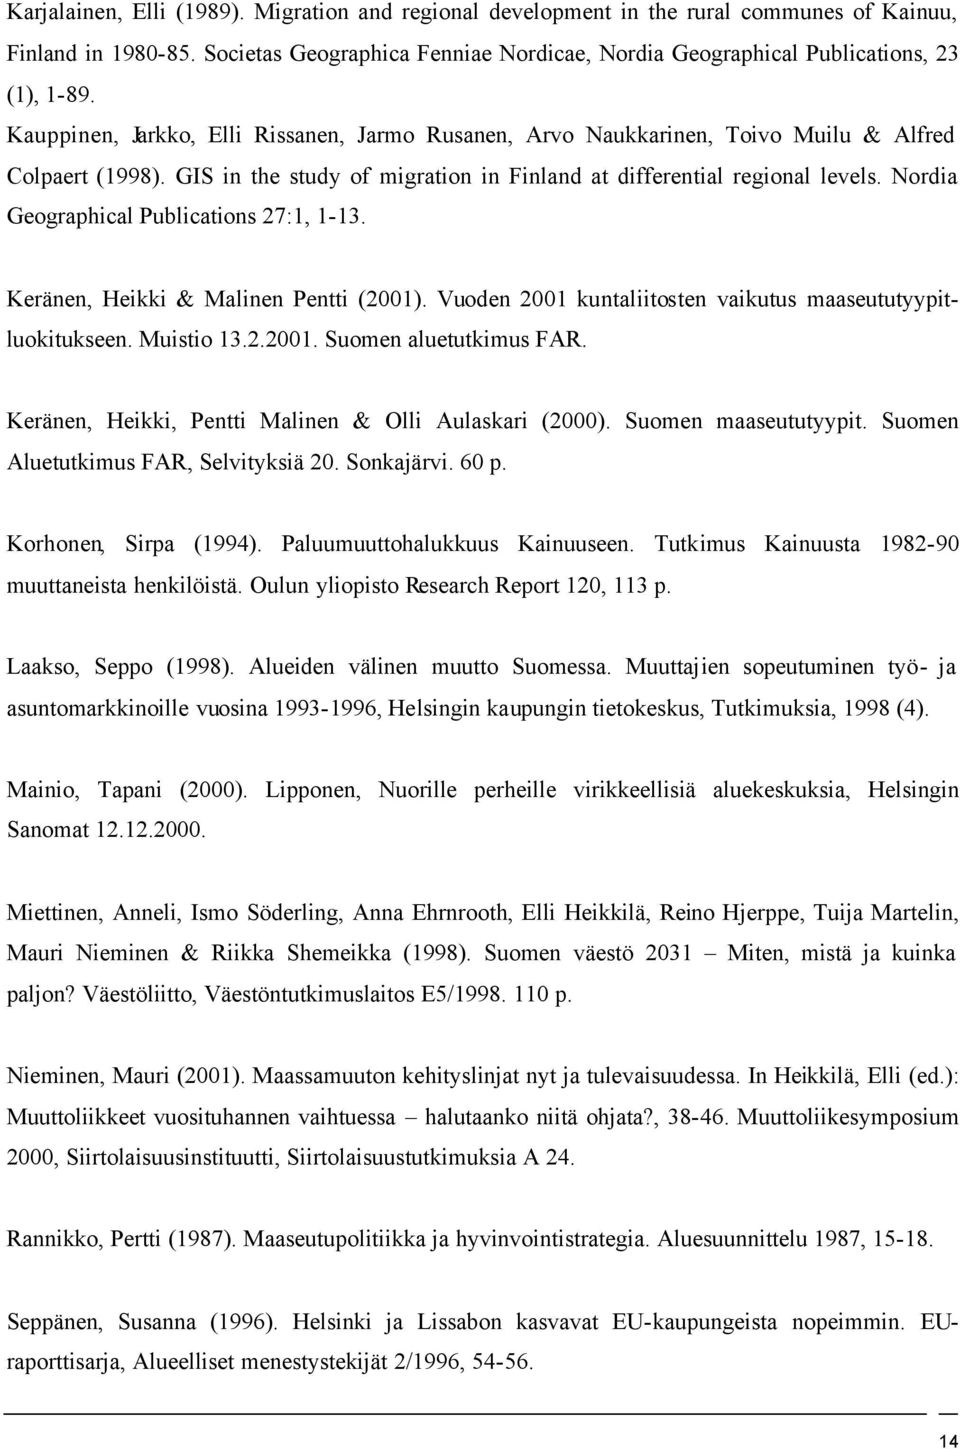 Nordia Geographical Publications 27:1, 1-13. Keränen, Heikki & Malinen Pentti (2001). Vuoden 2001 kuntaliitosten vaikutus maaseututyypitluokitukseen. Muistio 13.2.2001. Suomen aluetutkimus FAR.